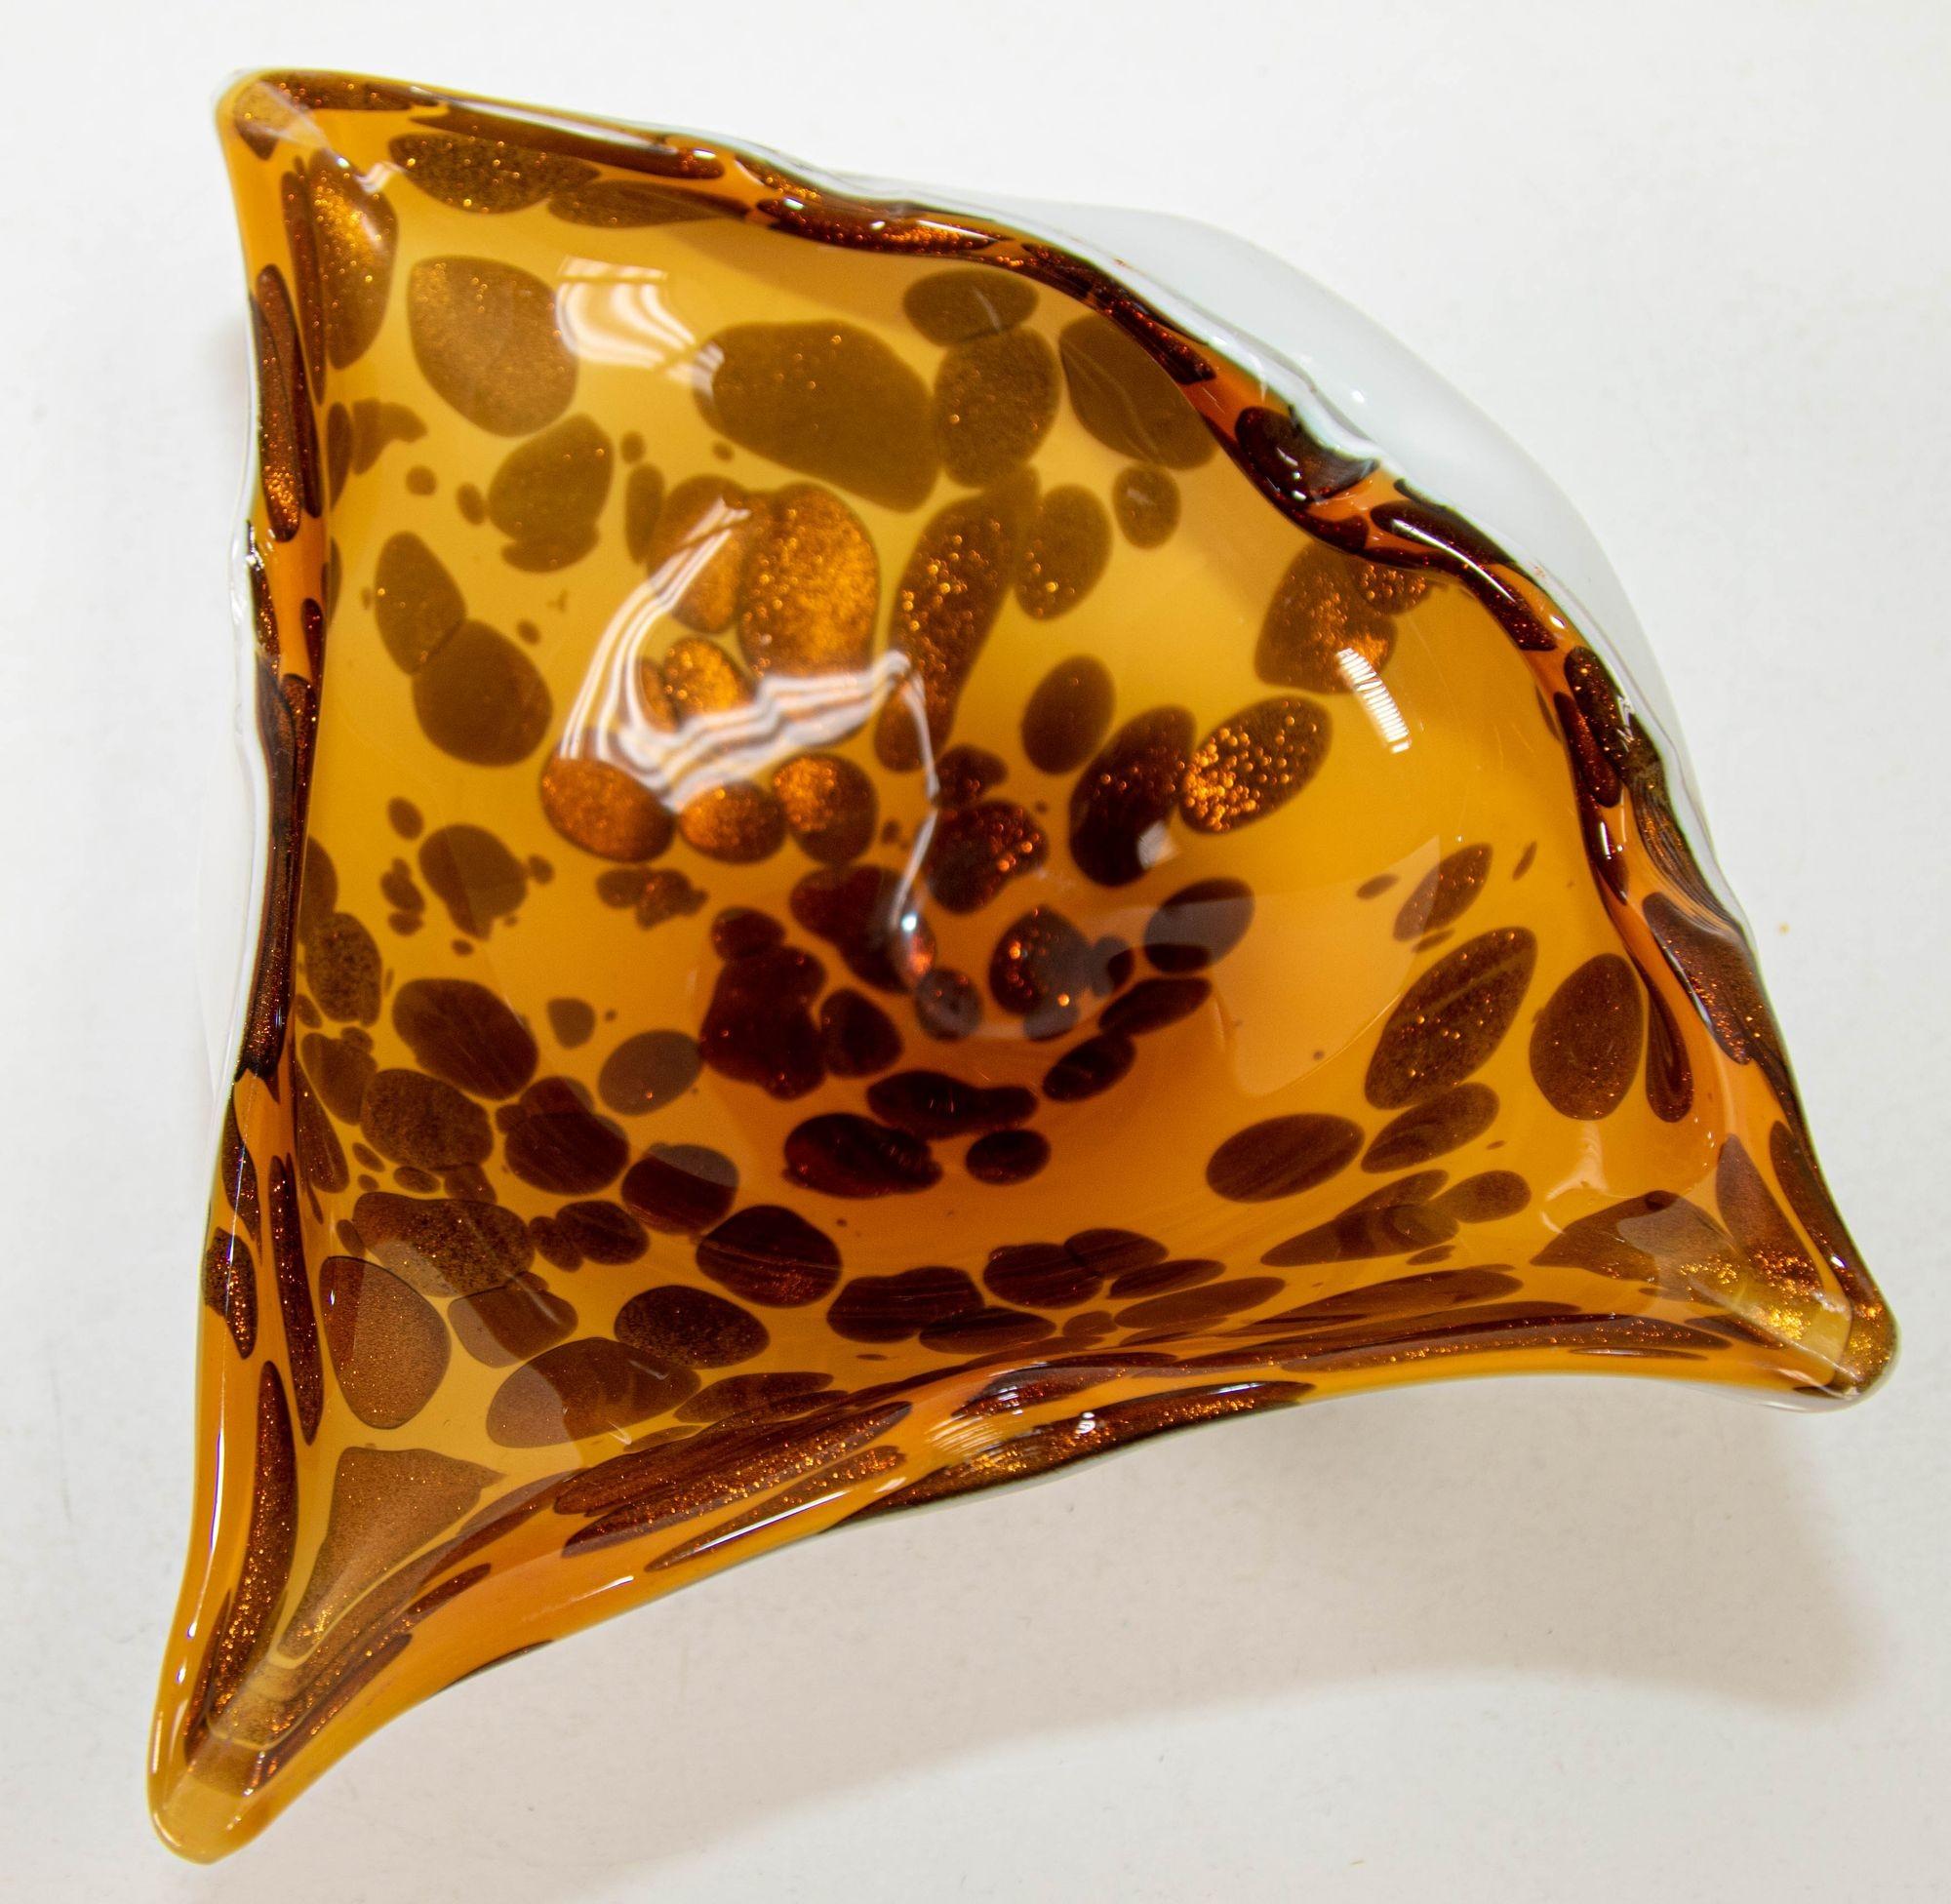 Coupe en verre d'art de Murano, léopard de la raie Manta, tortue tachetée dans des couleurs ambre et brun expresso foncé et inclusions d'aventurine cuivrée dorée. Plat unique en verre de Murano blanc et cuivre soufflé à la bouche, de couleur ambre,